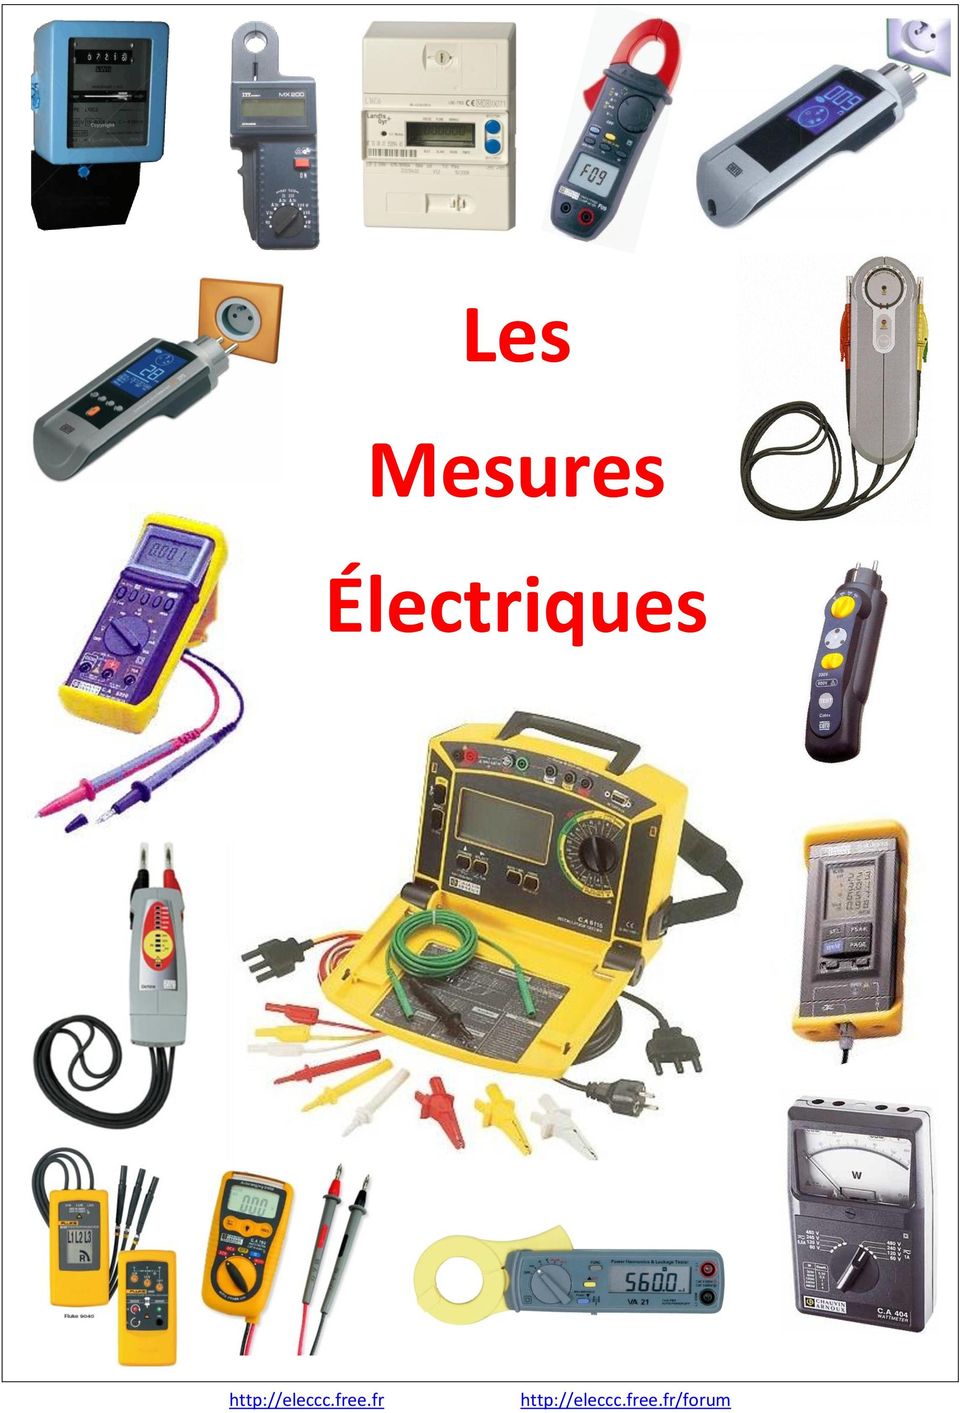 Cours Mesure Electrique